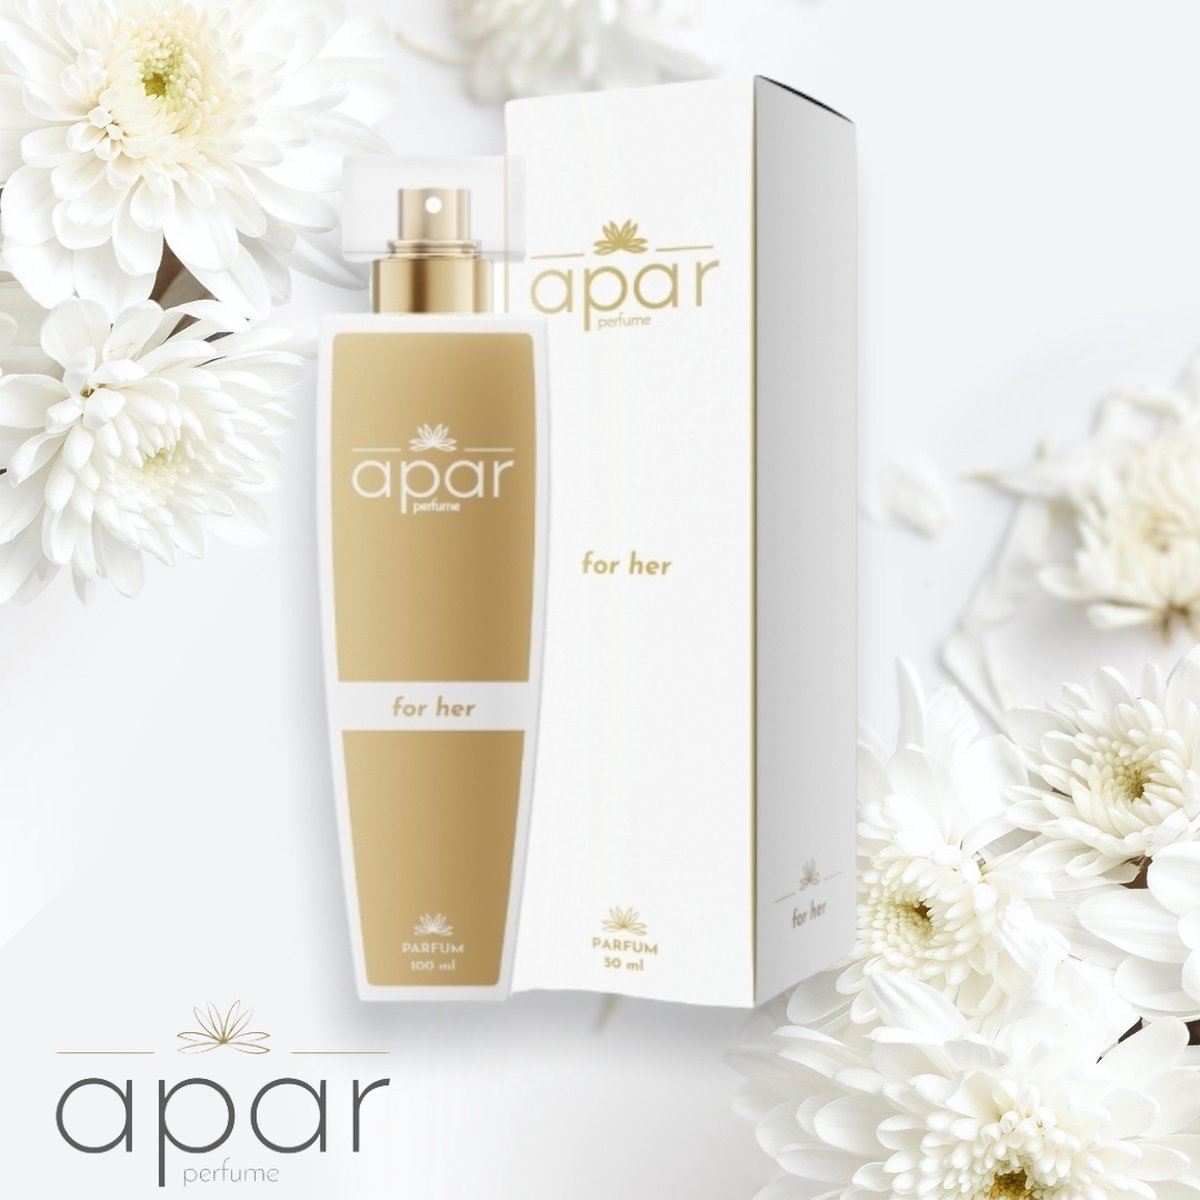 *F100* Oriëntaals, Bloemige merkgeur voor dames APAR Parfum EDP - 50ml - Nummer F100 Premium - Cadeau Tip !